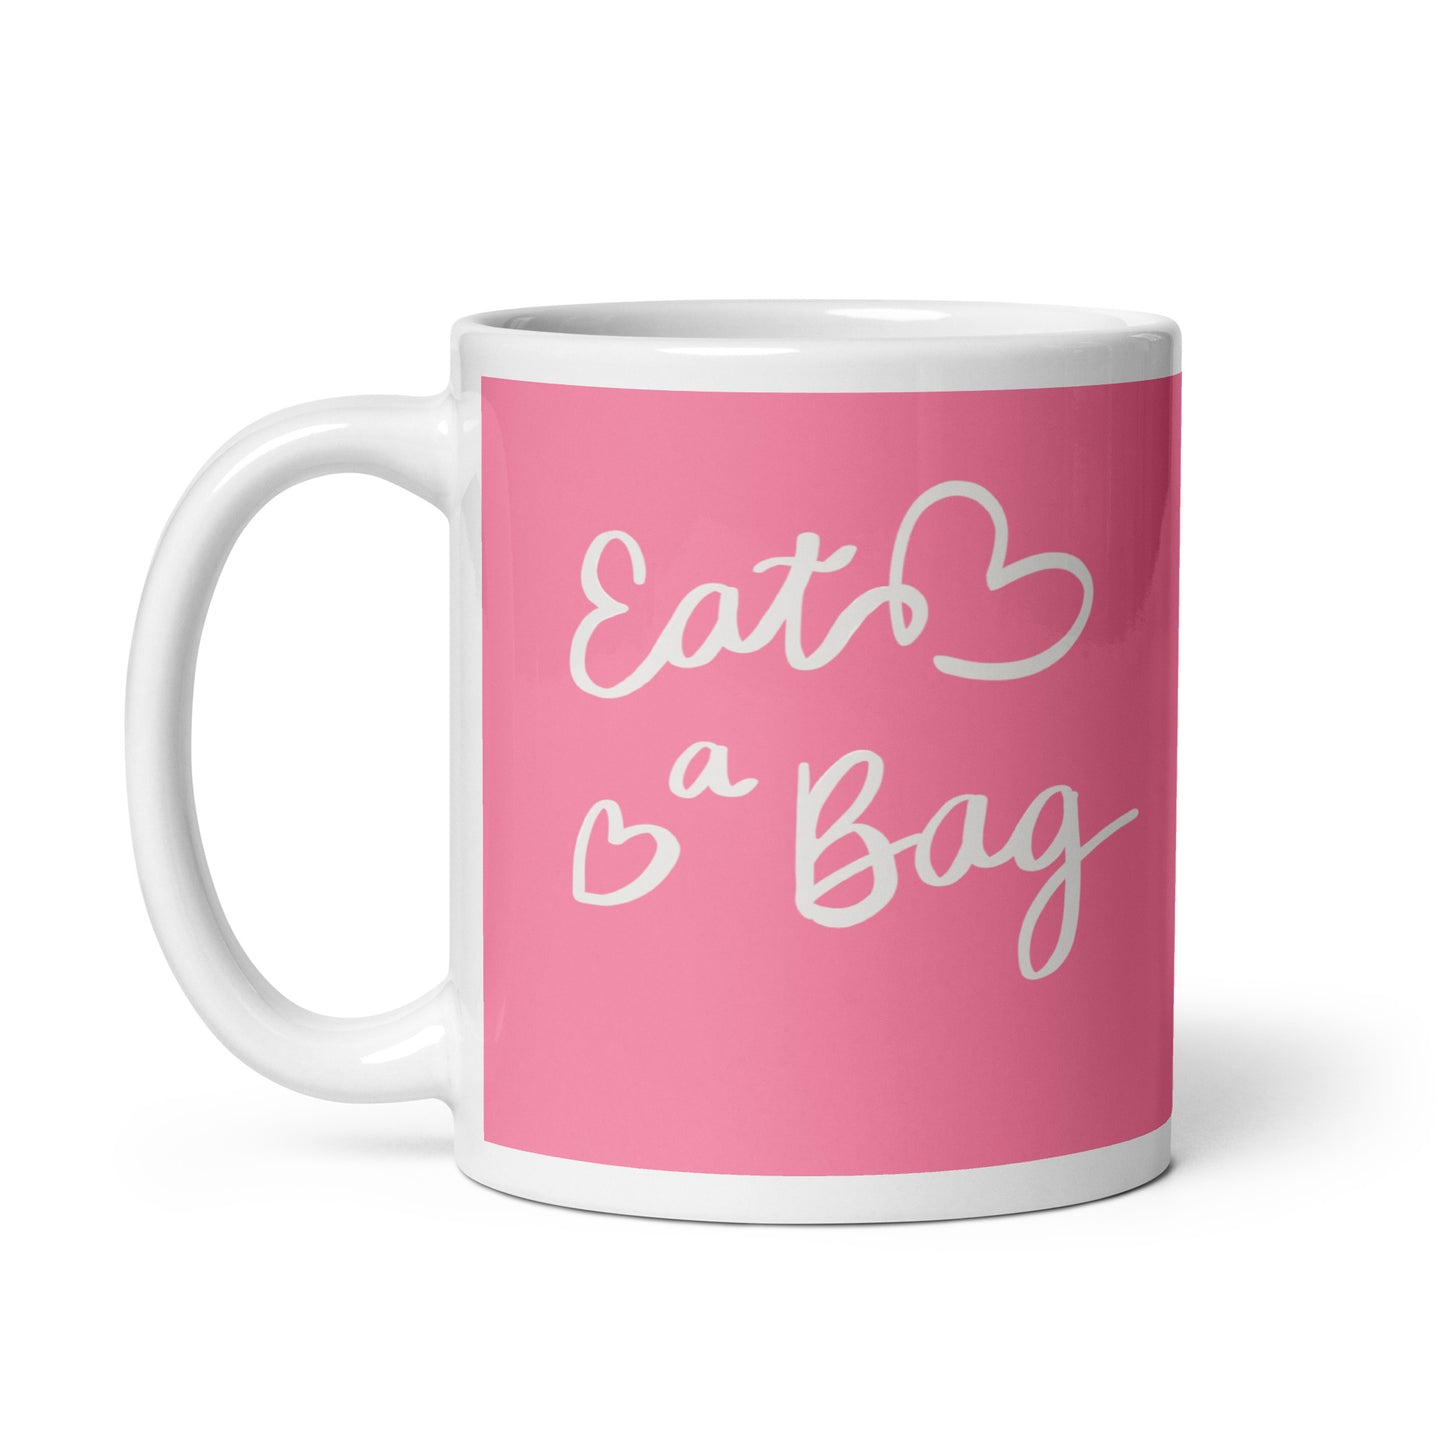 Eat a Bag (pink)- 11oz glossy mug